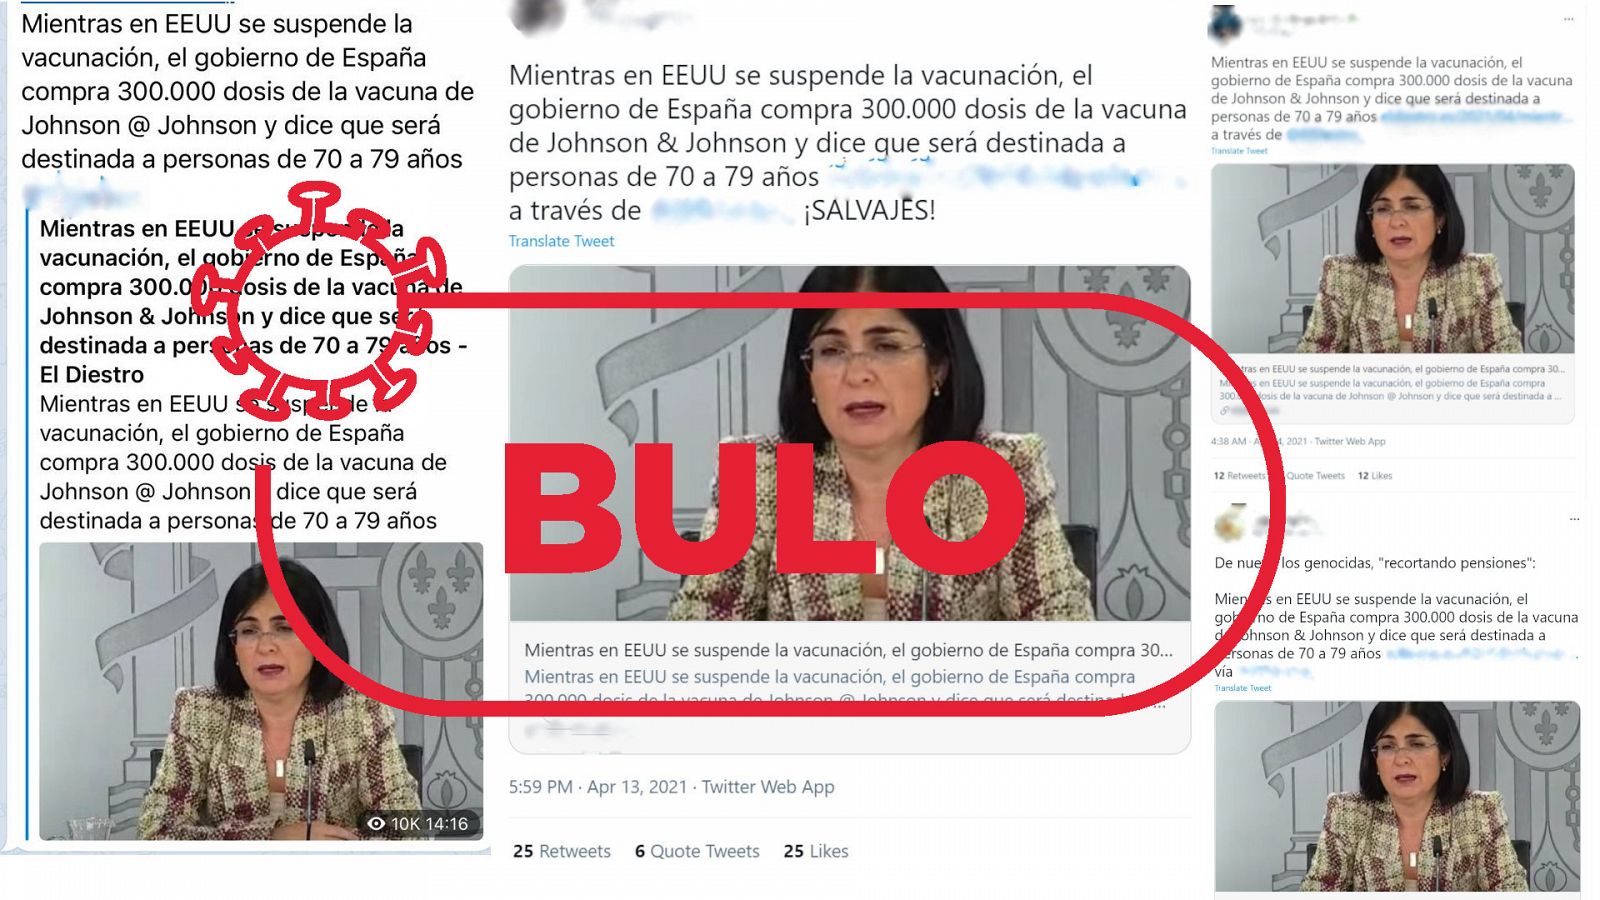 Mensajes de redes que dicen que España ha comprado Janssen cuando ya estaba suspendida en EE.UU. con el sello rojo de bulo de VerificaRTVE